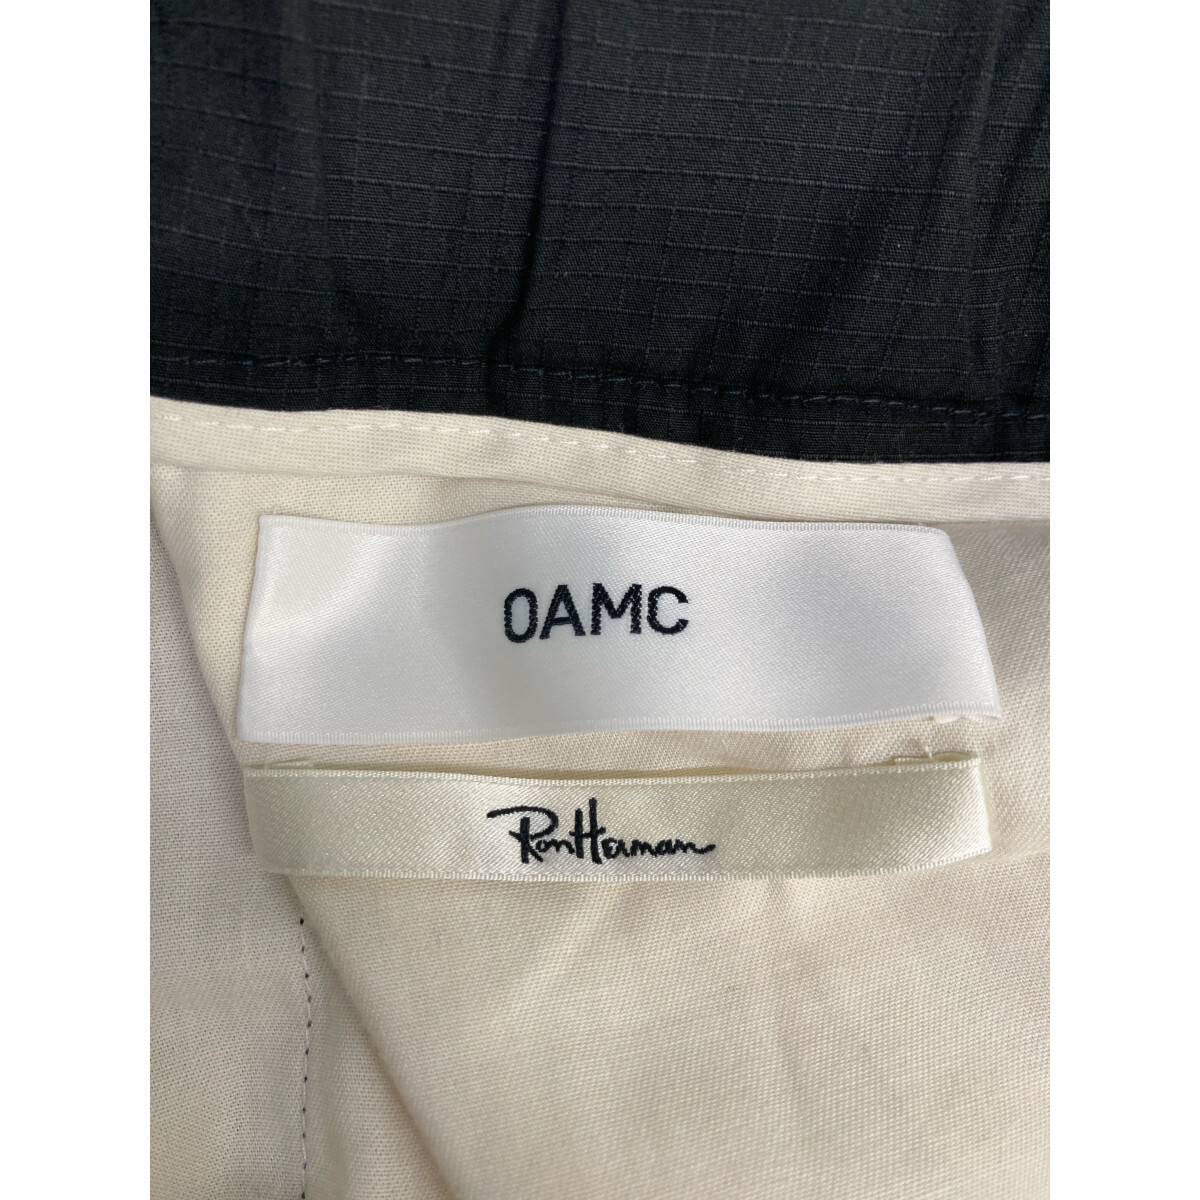 OAMC オーエーエムシー 3920600115 Regs Ripstop Pants ブラック L ボトムス コットン メンズ 中古_画像7